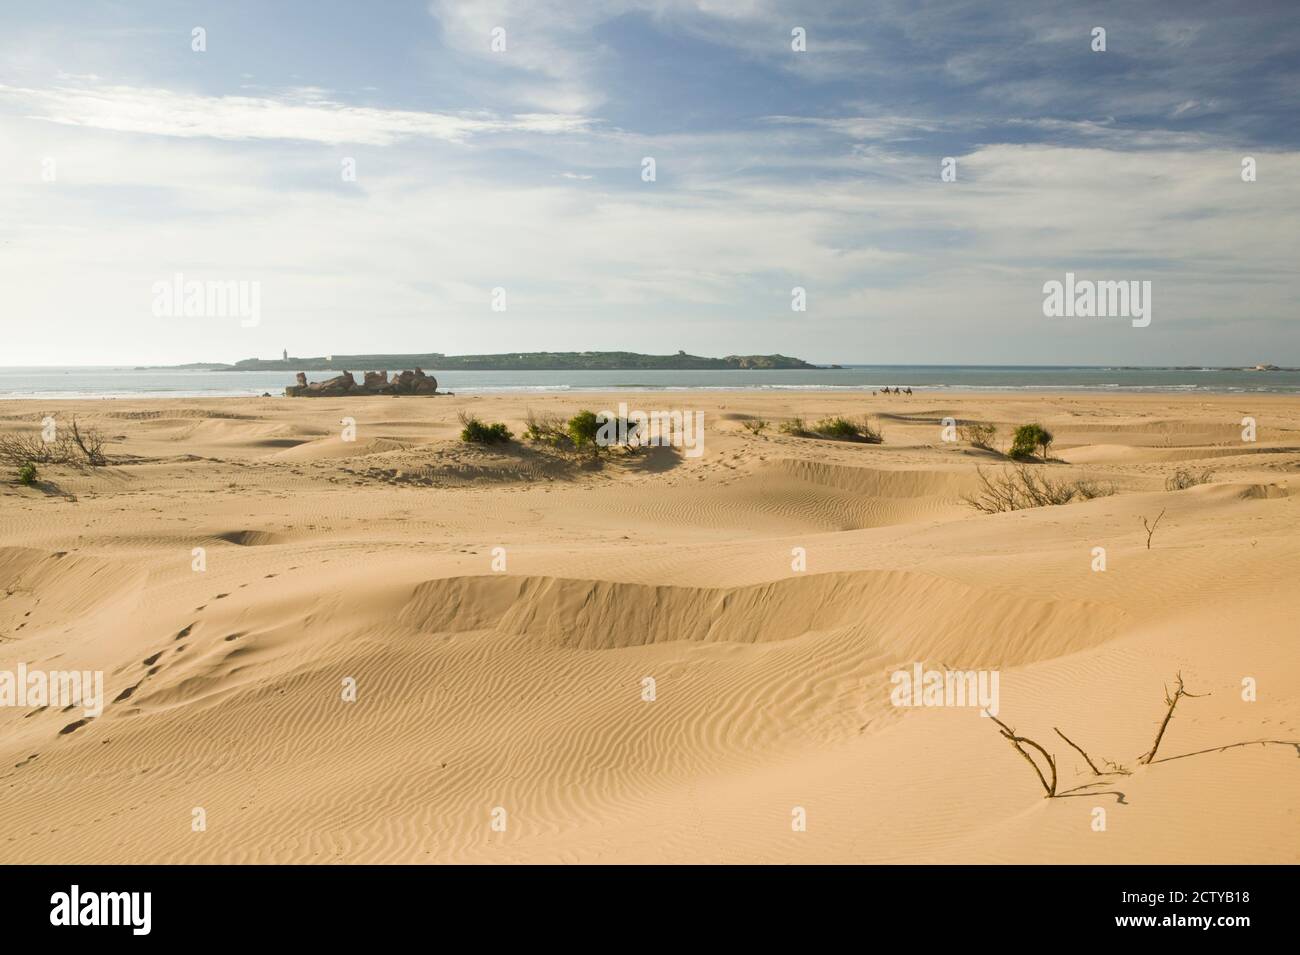 Sand dunes in a desert, Diabat, Essaouira, Atlantic Coast, Morocco Stock Photo